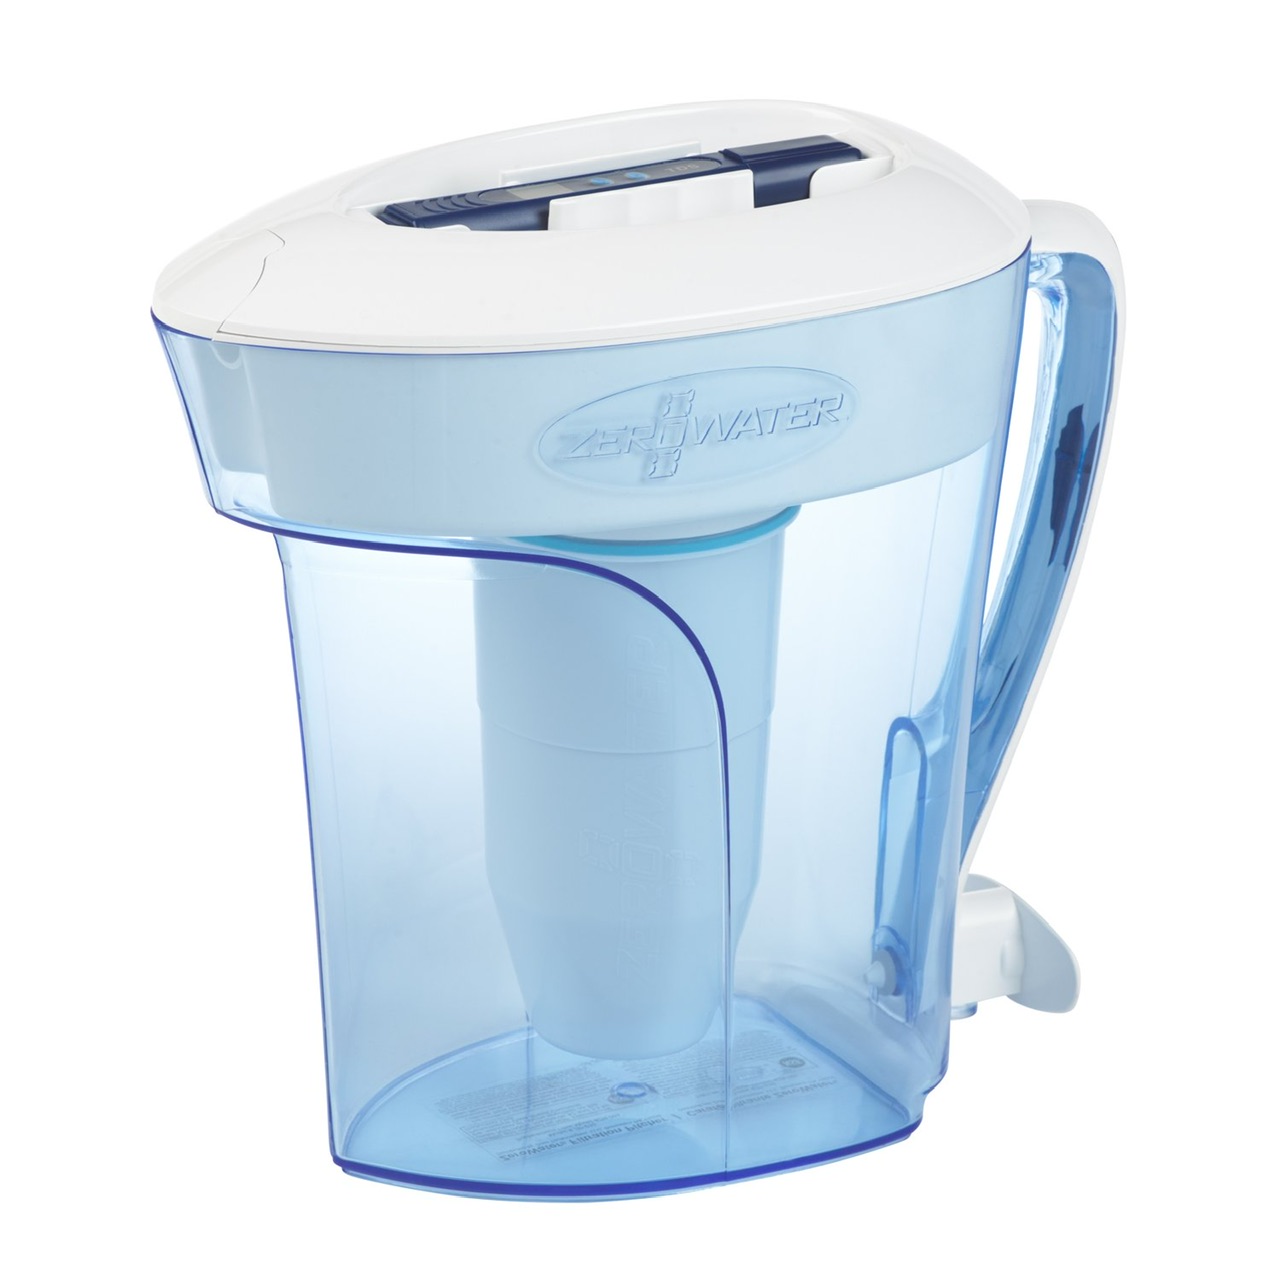 Best water filter pitcher reddit